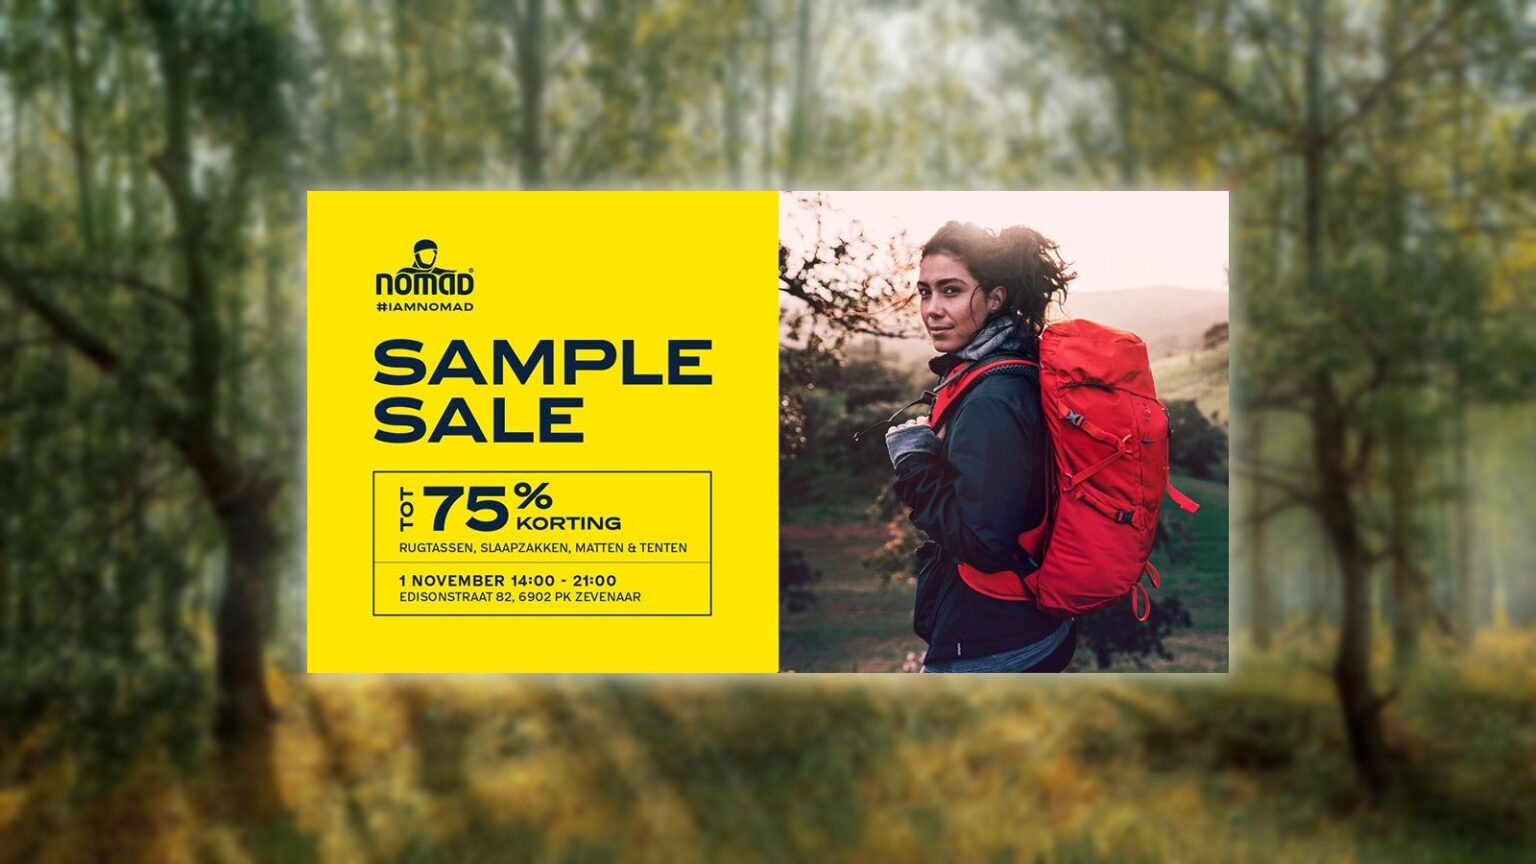 Nomad sample sale november 10`9